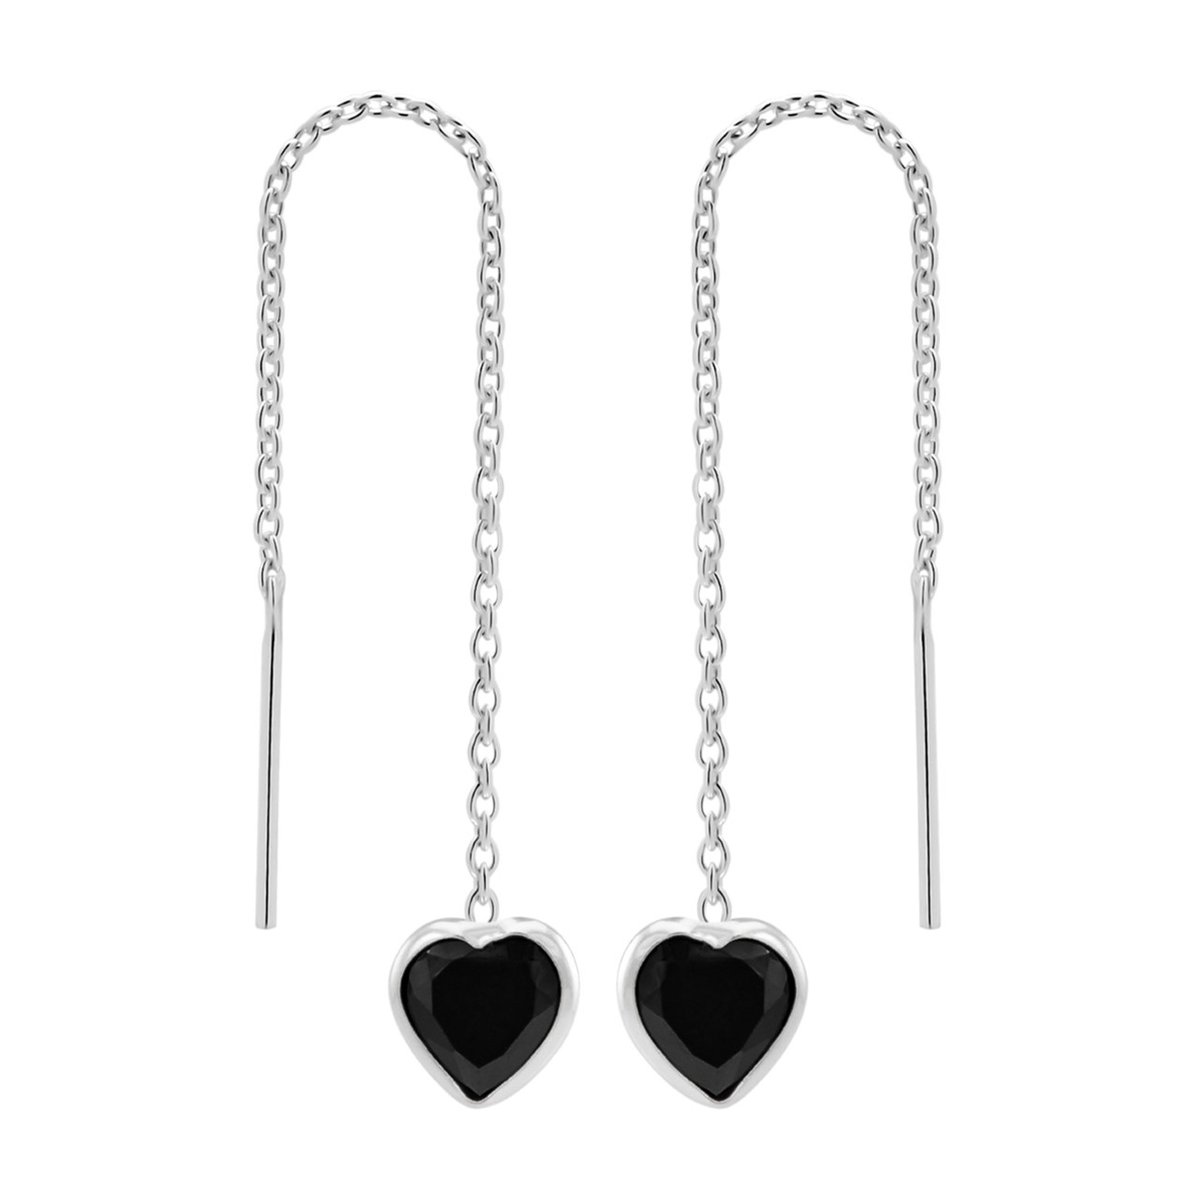 Zilveren oorbellen | Chain oorbellen | Zilveren chain oorbellen, zwart hart